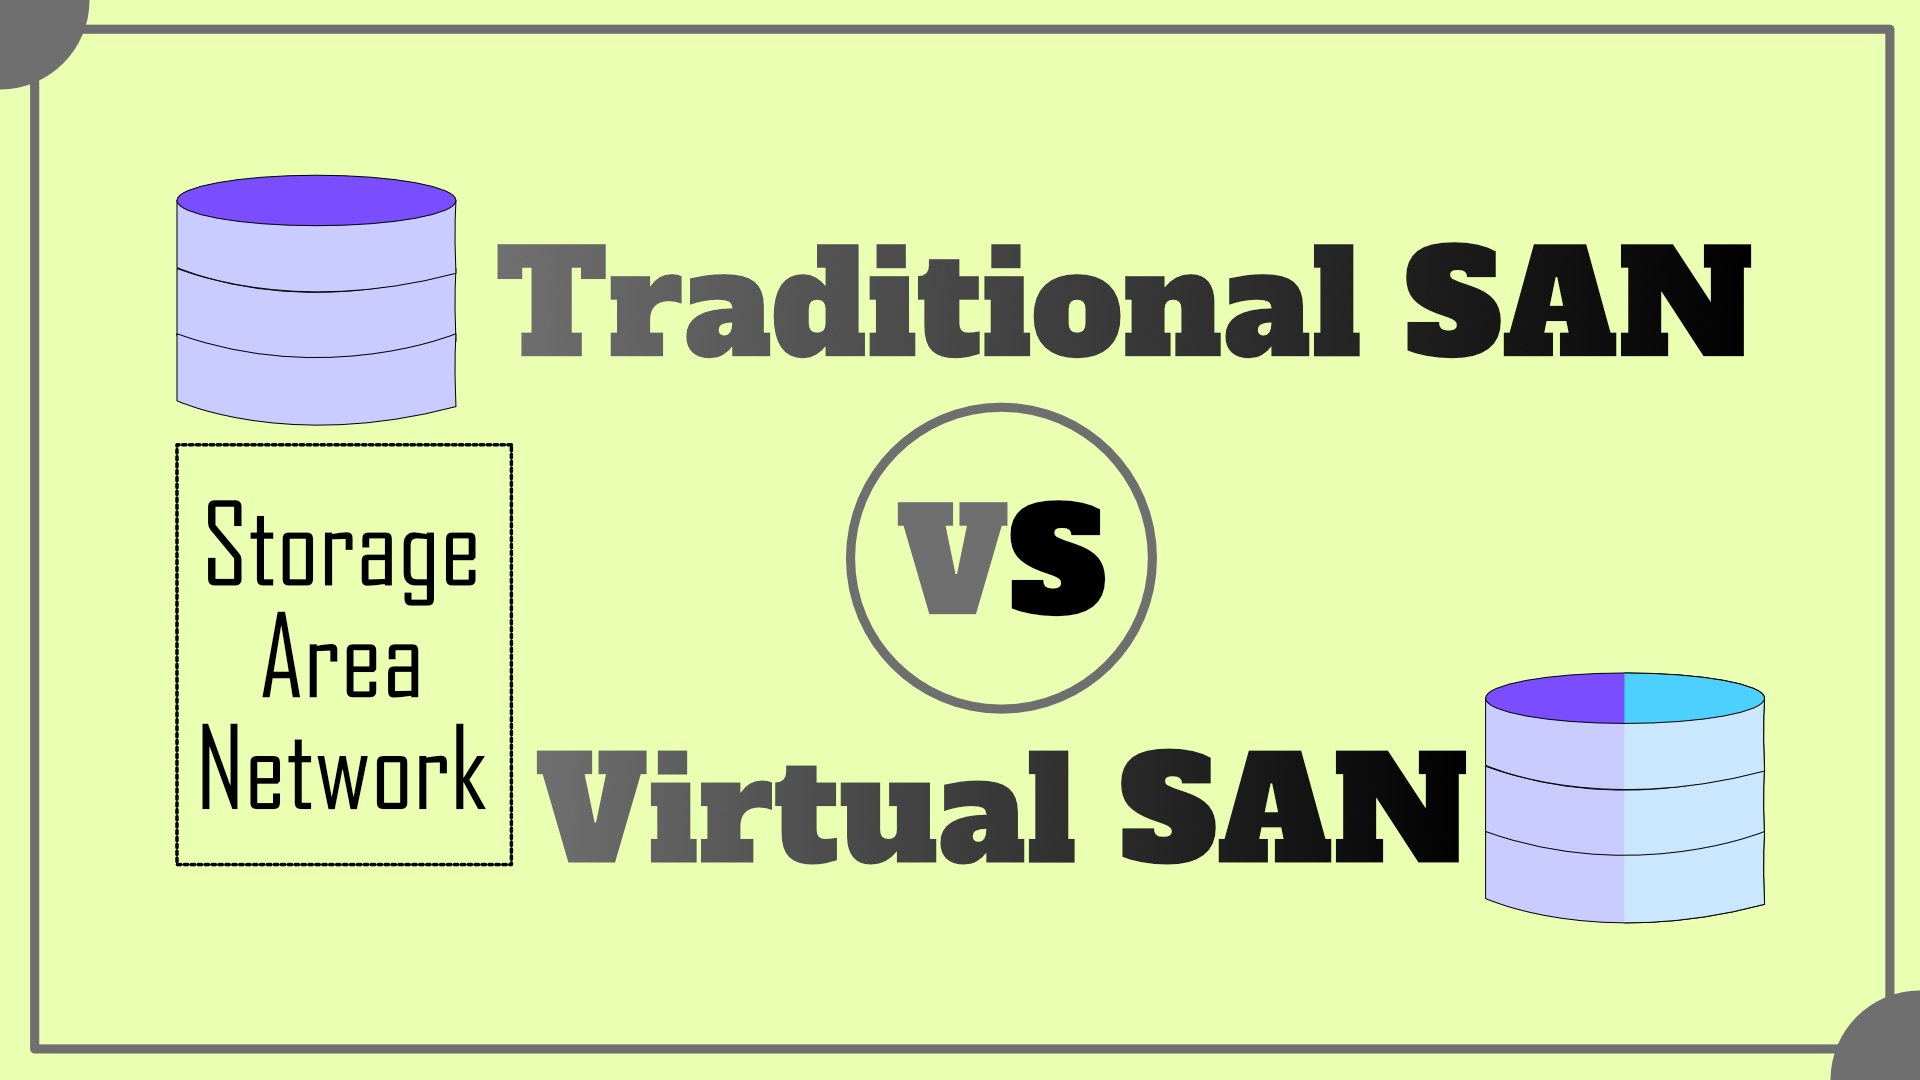 Traditional SAN vs Virtual SAN